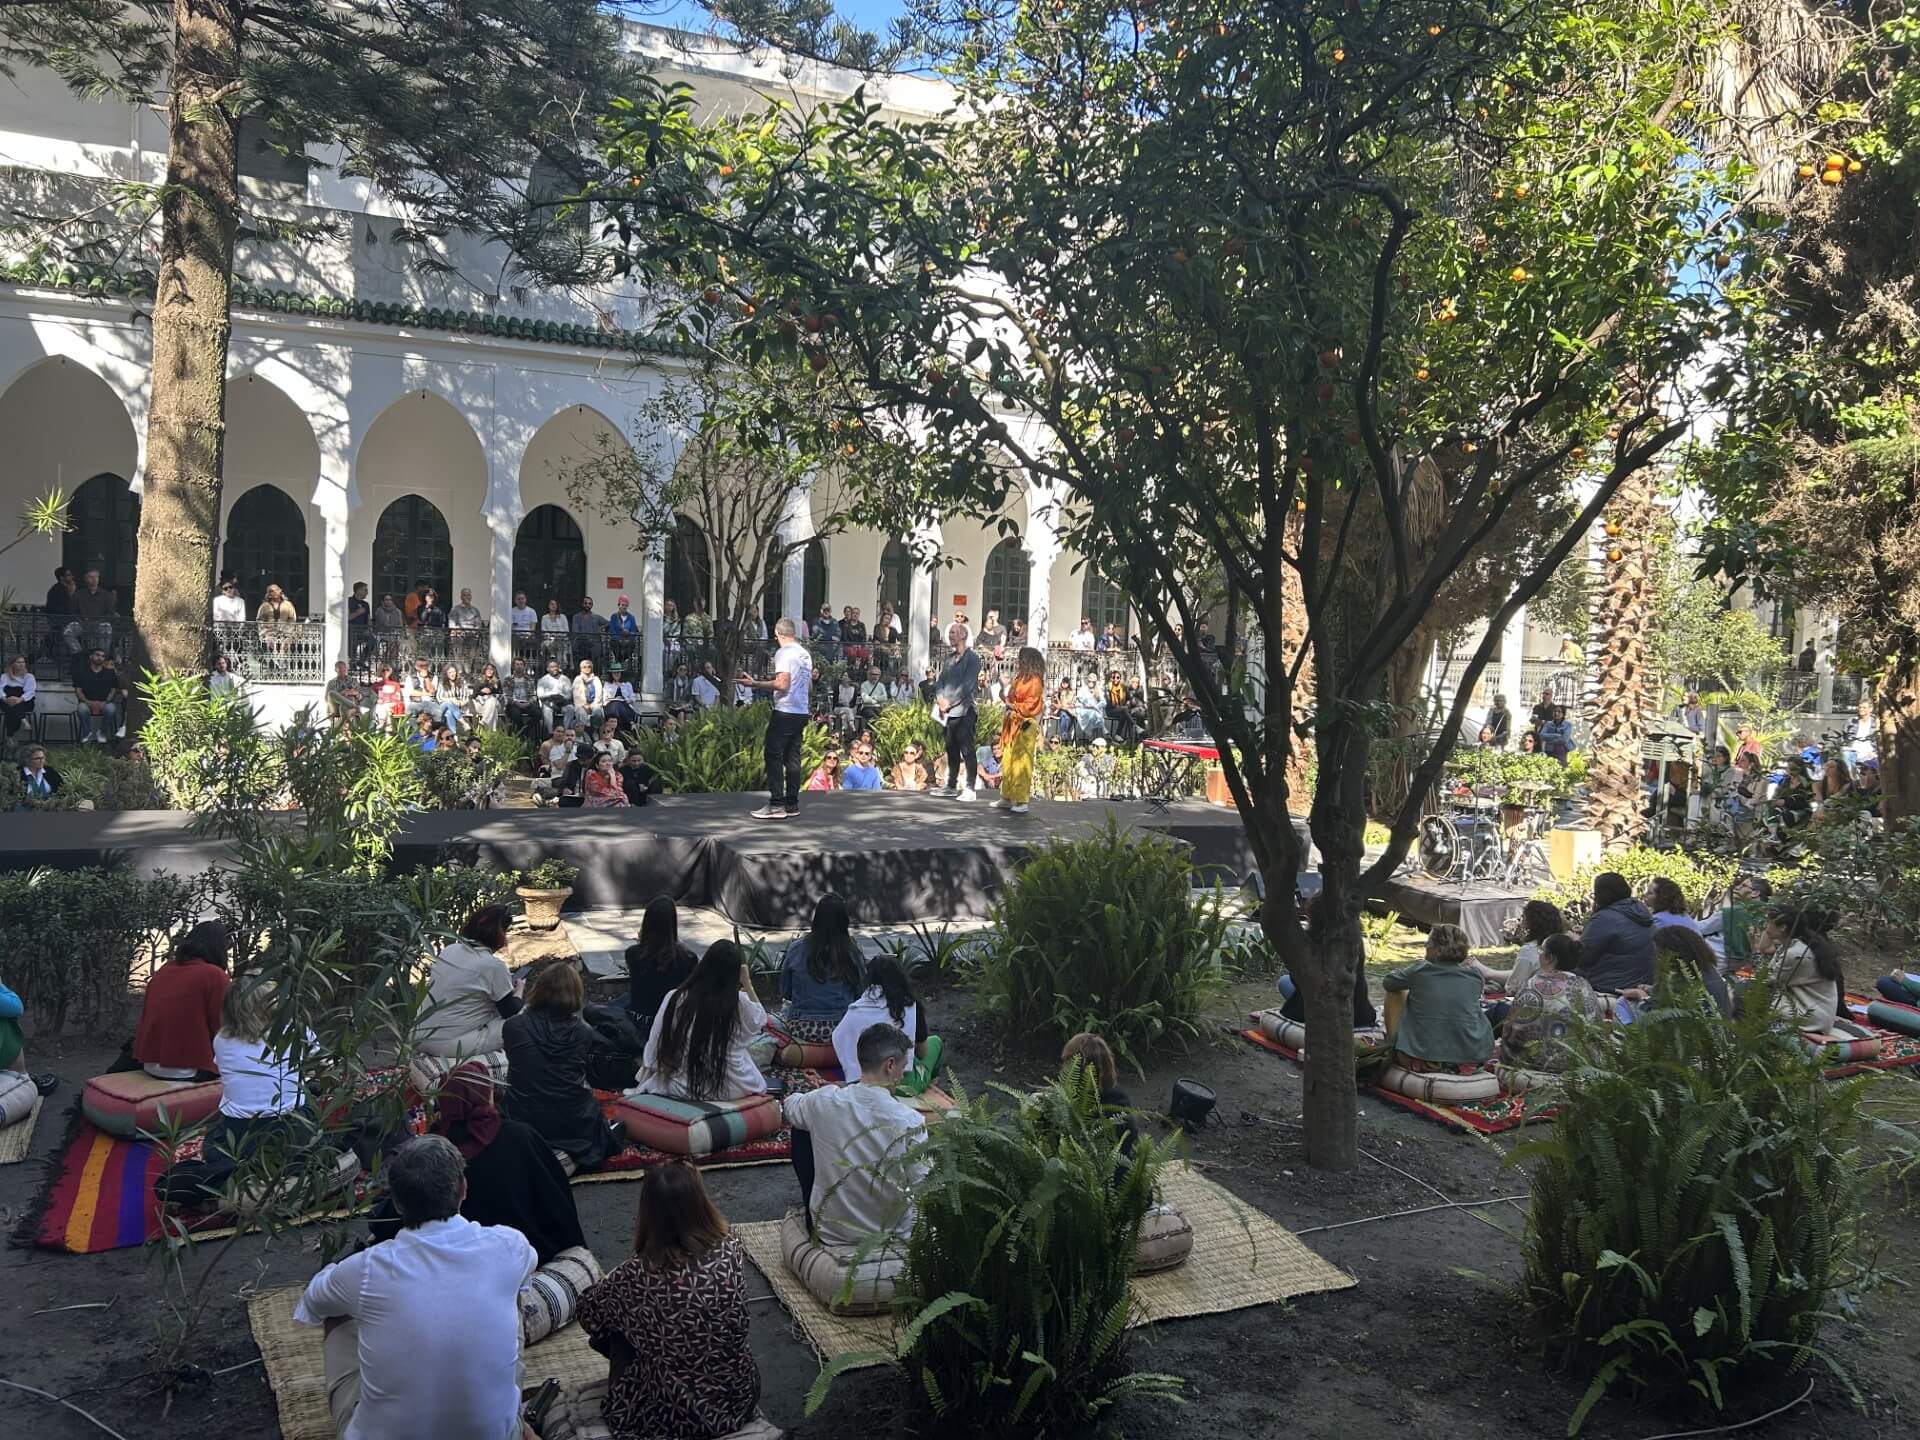 Un grupo de más de 30 personas sentadas en cojines de estilo marroquí en un patio al aire libre de Tánger. Están escuchando a unos oradores en un escenario central. En el patio crecen hermosos árboles.